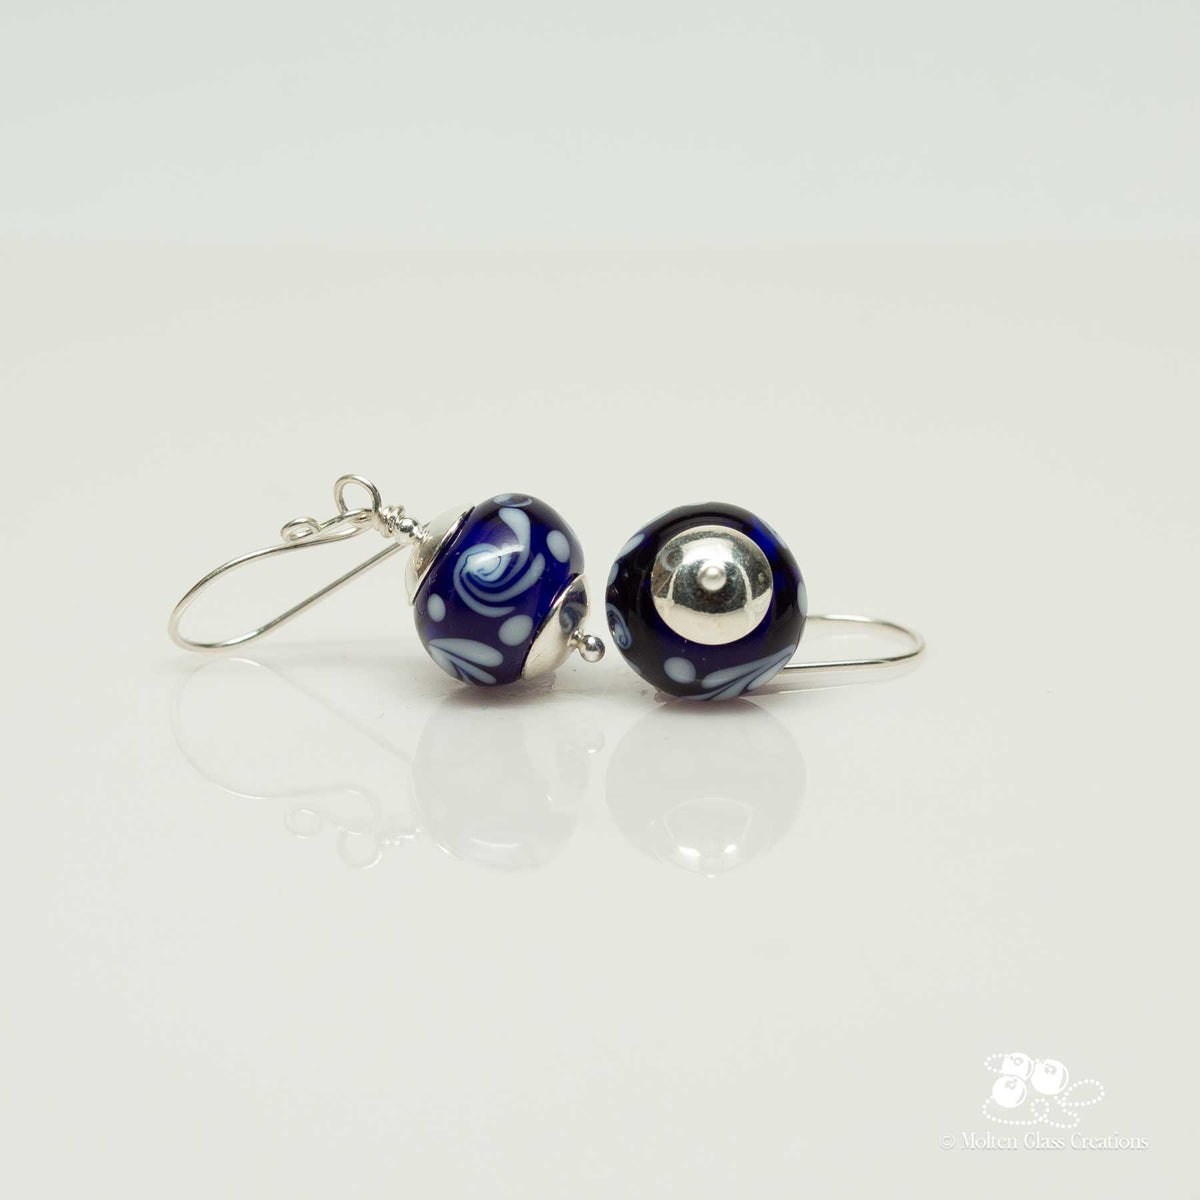 Cobalt Blue Glass Bead Earrings - Molten Glass Creations